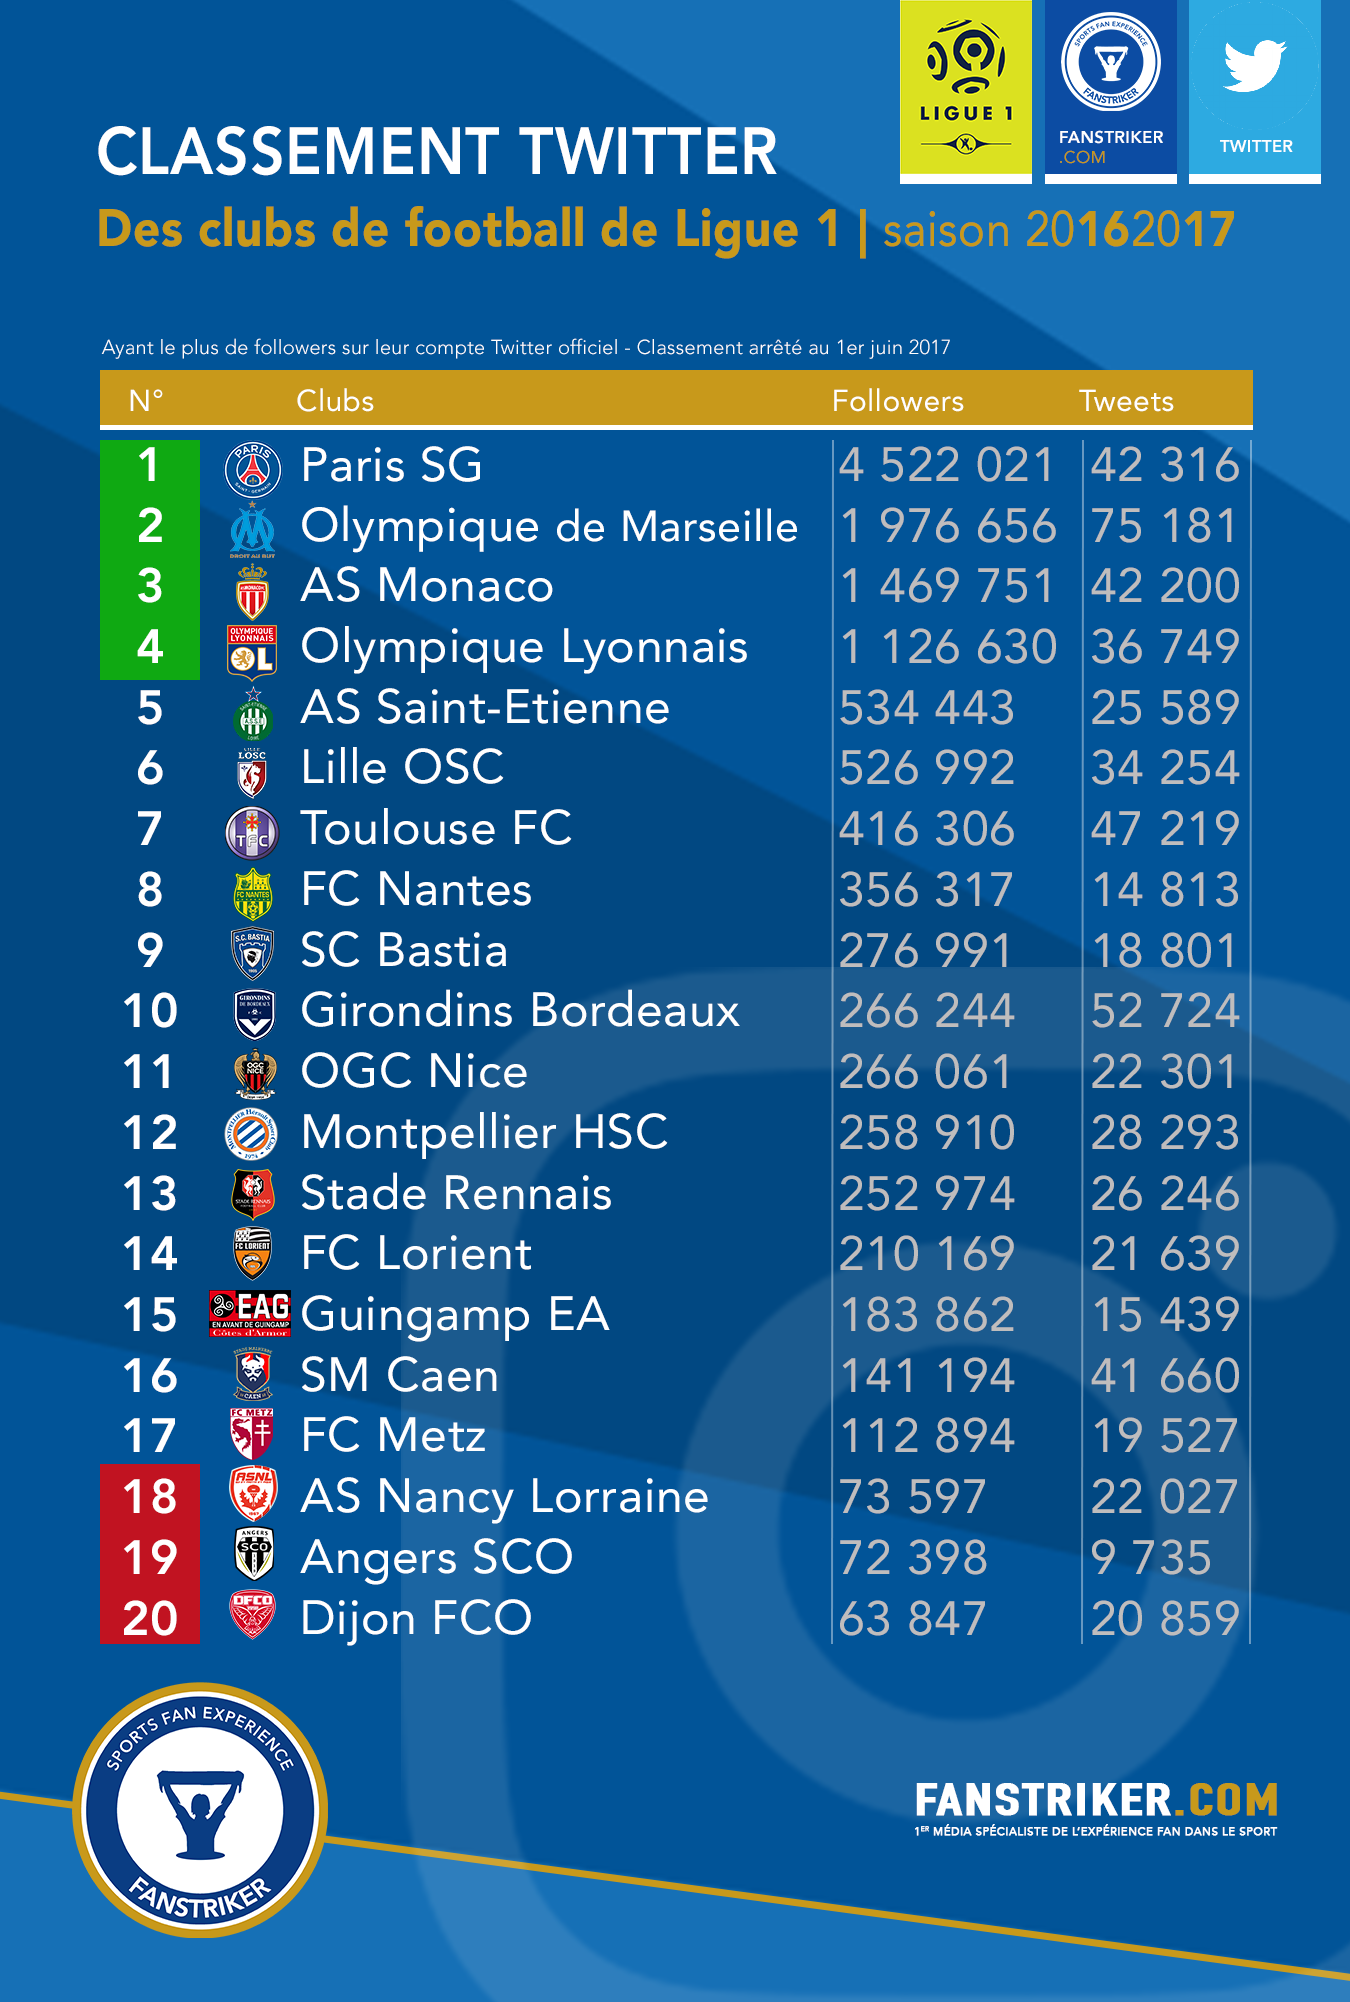 Le classement Twitter des clubs de Ligue 1